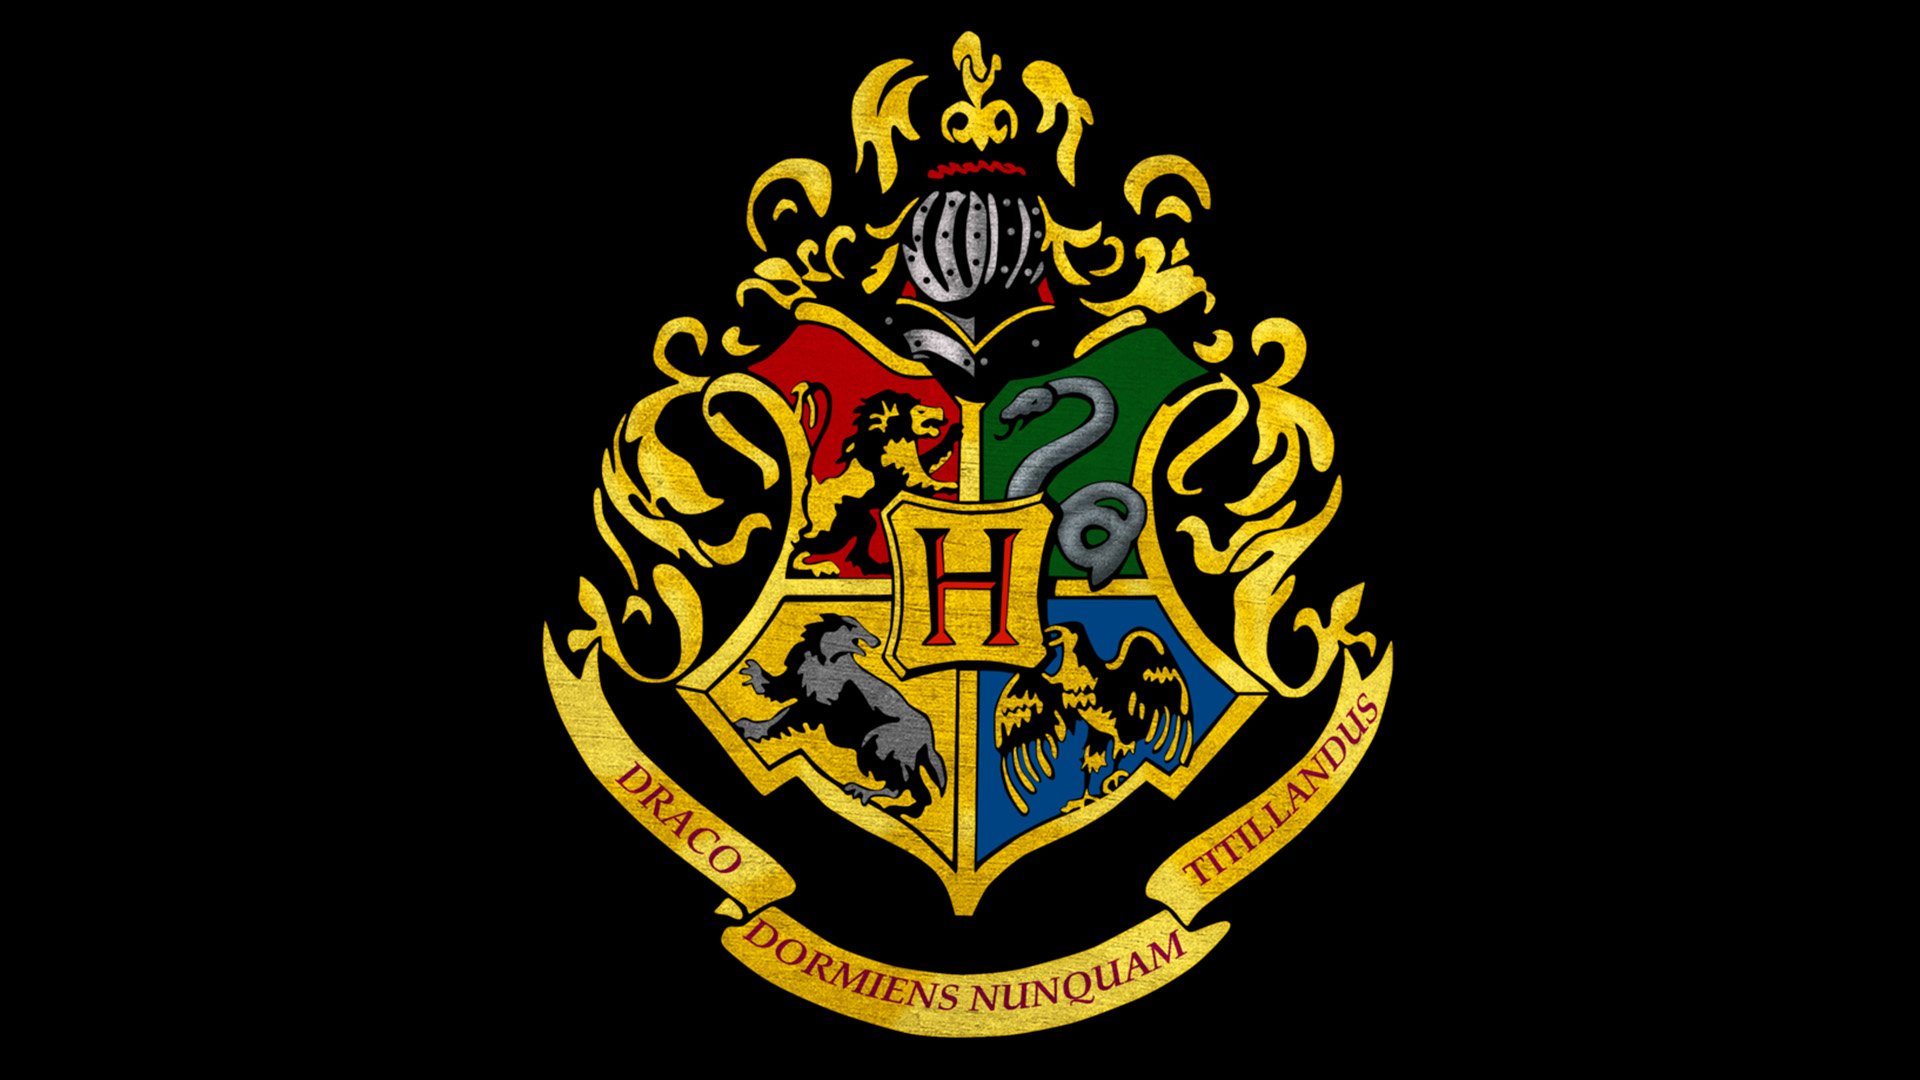 O Livro Padrão de Feitiços, Harry Potter Wiki